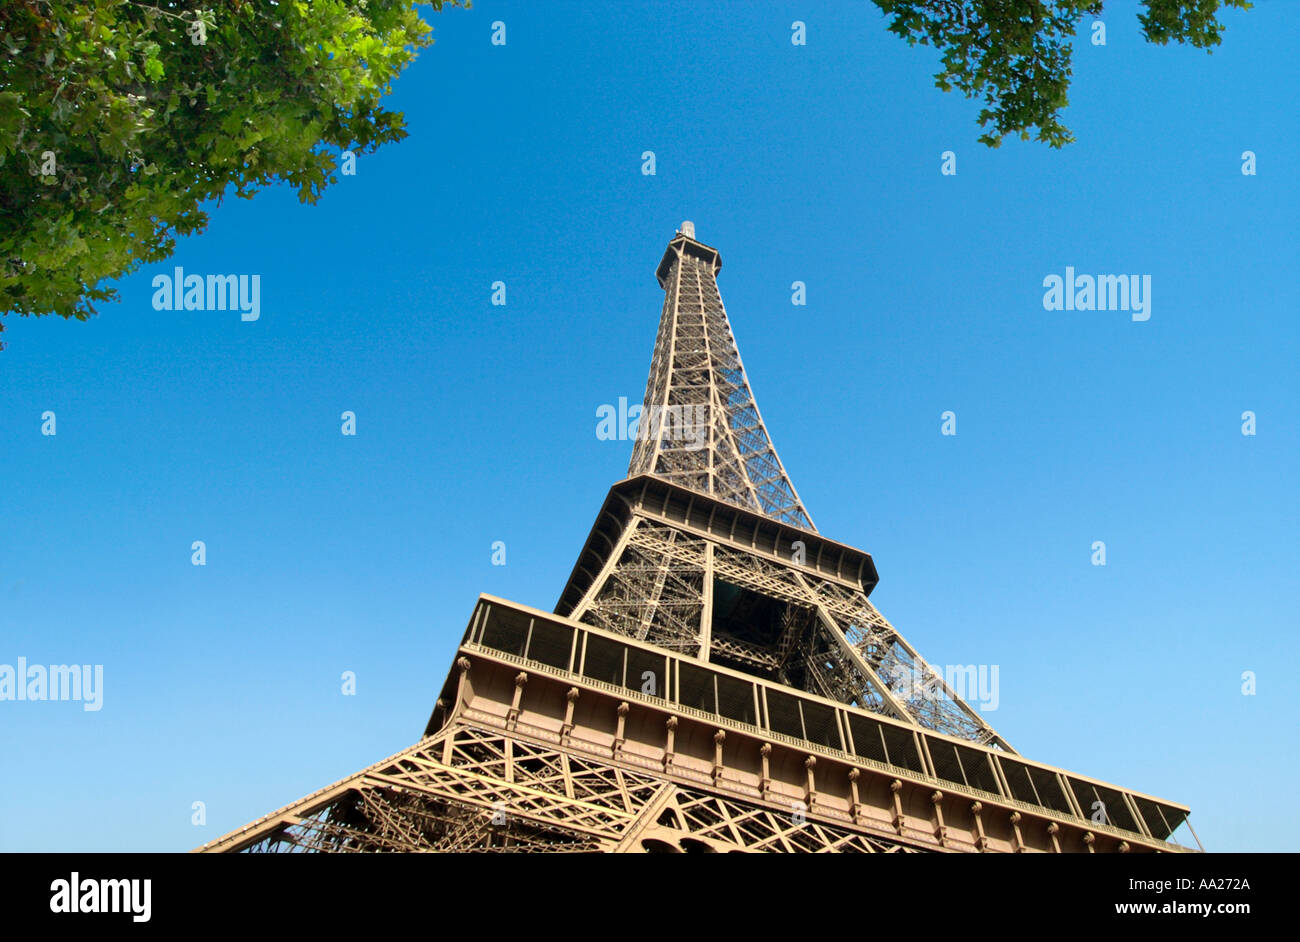 La Tour Eiffel, du Champ de Mars, Paris, France Banque D'Images